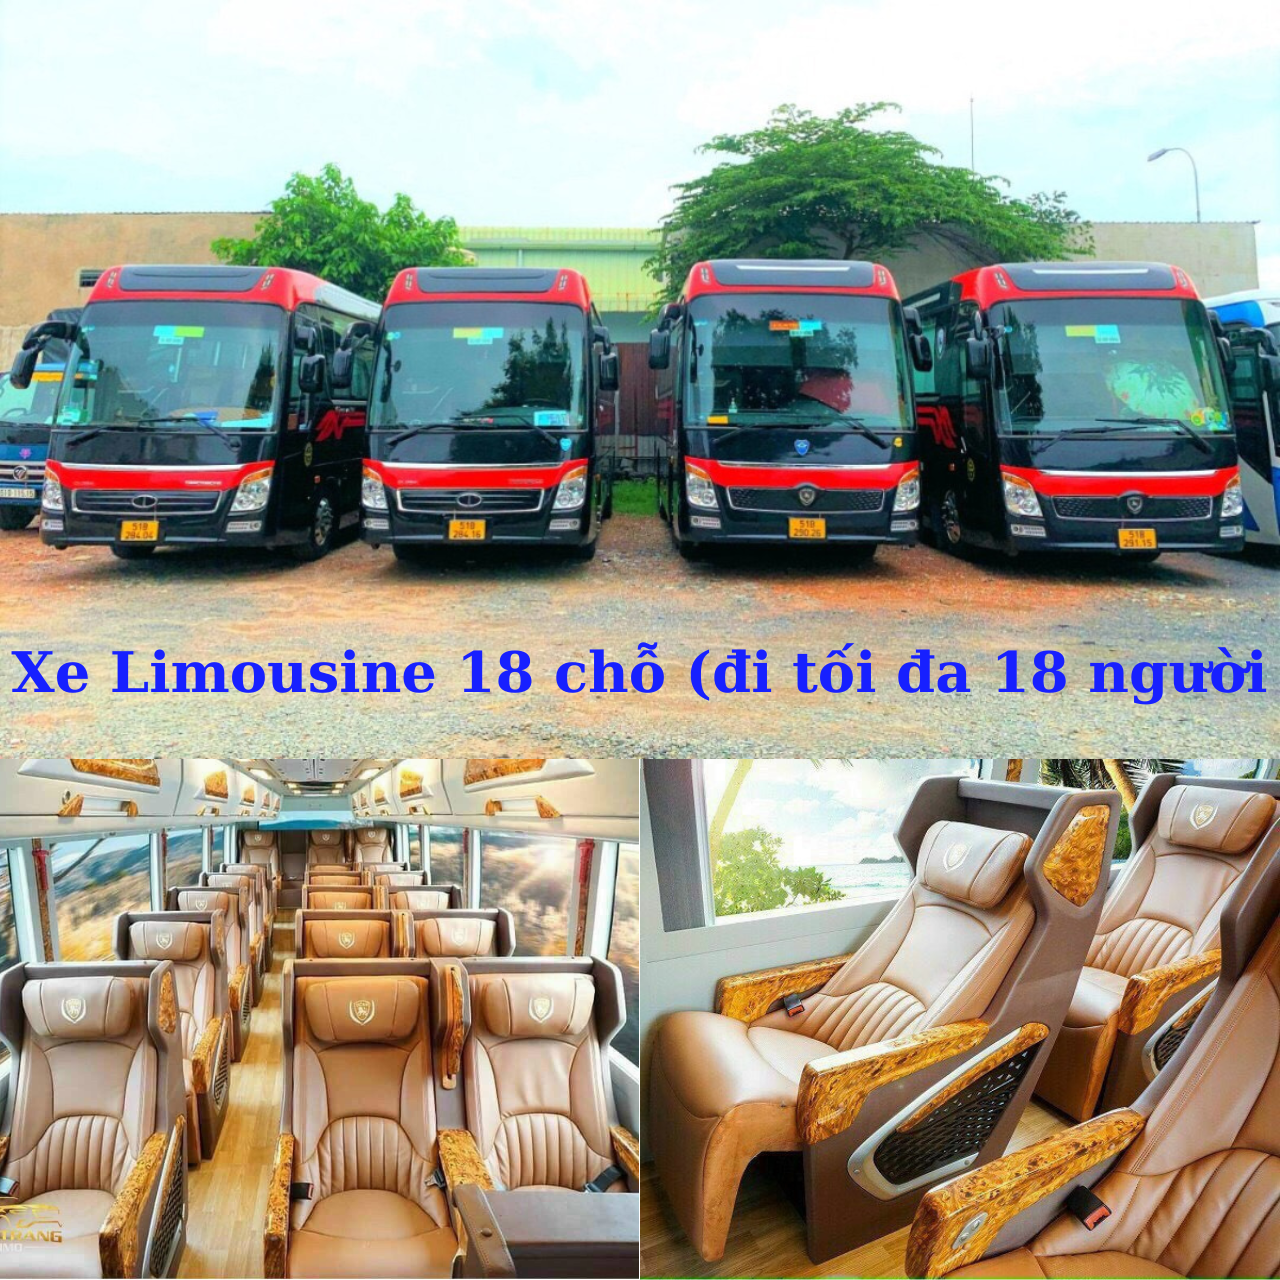 Thuê xe Limousine 18 chỗ (đi tối đa 18 khách).png (2.56 MB)